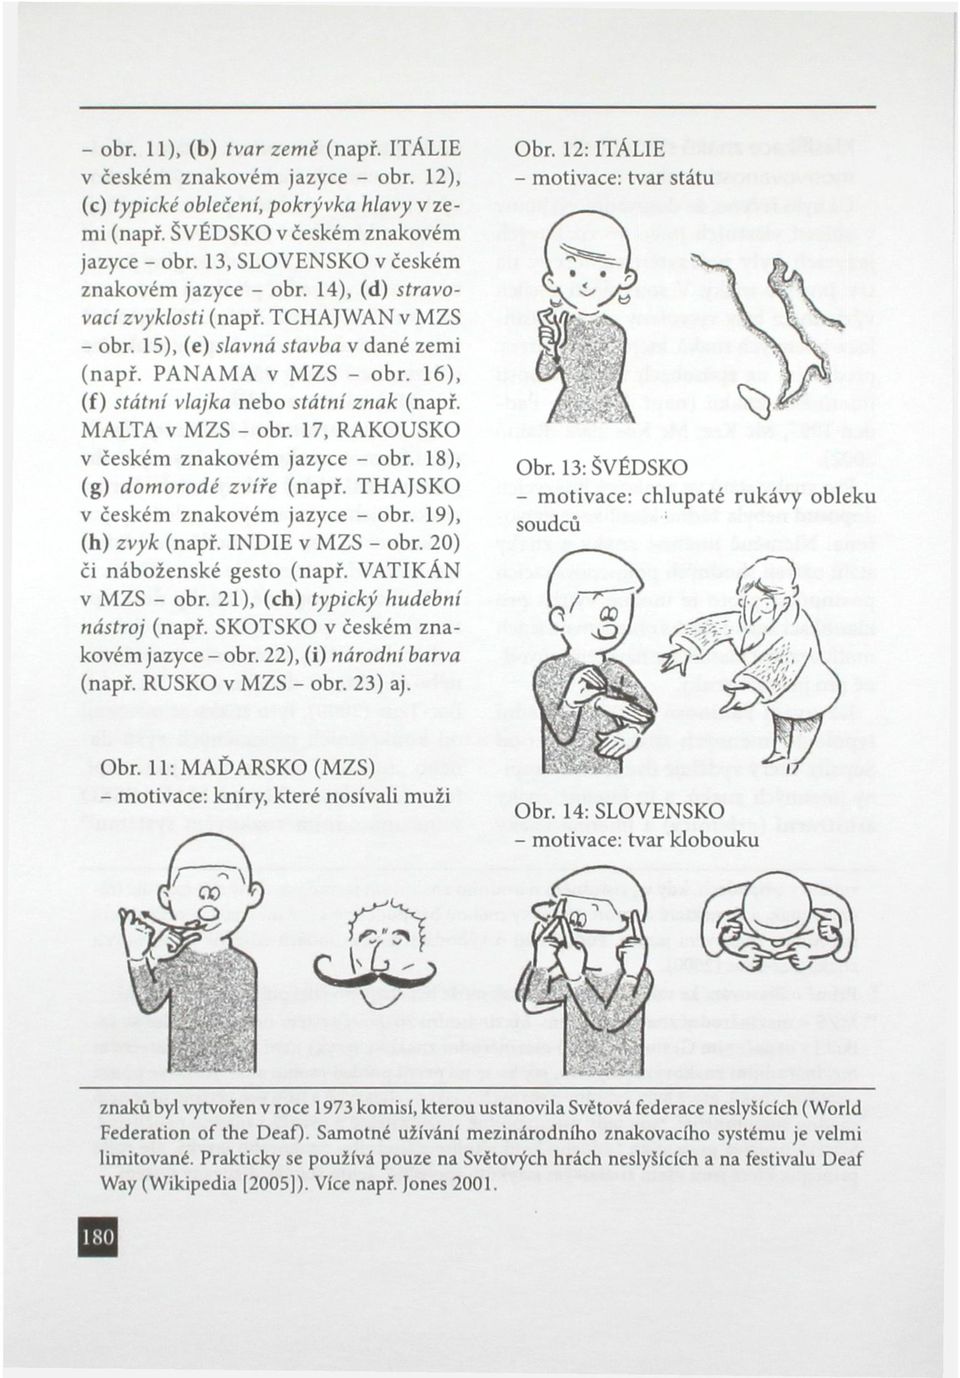 16), (f) státní vlajka nebo státní znak (např. MALTA v MZS - obr. 17, RAKOUSKO v českém znakovém jazyce - obr. 18), (g) domorodé zvíře (např. THAJSKO v českém znakovém jazyce - obr.